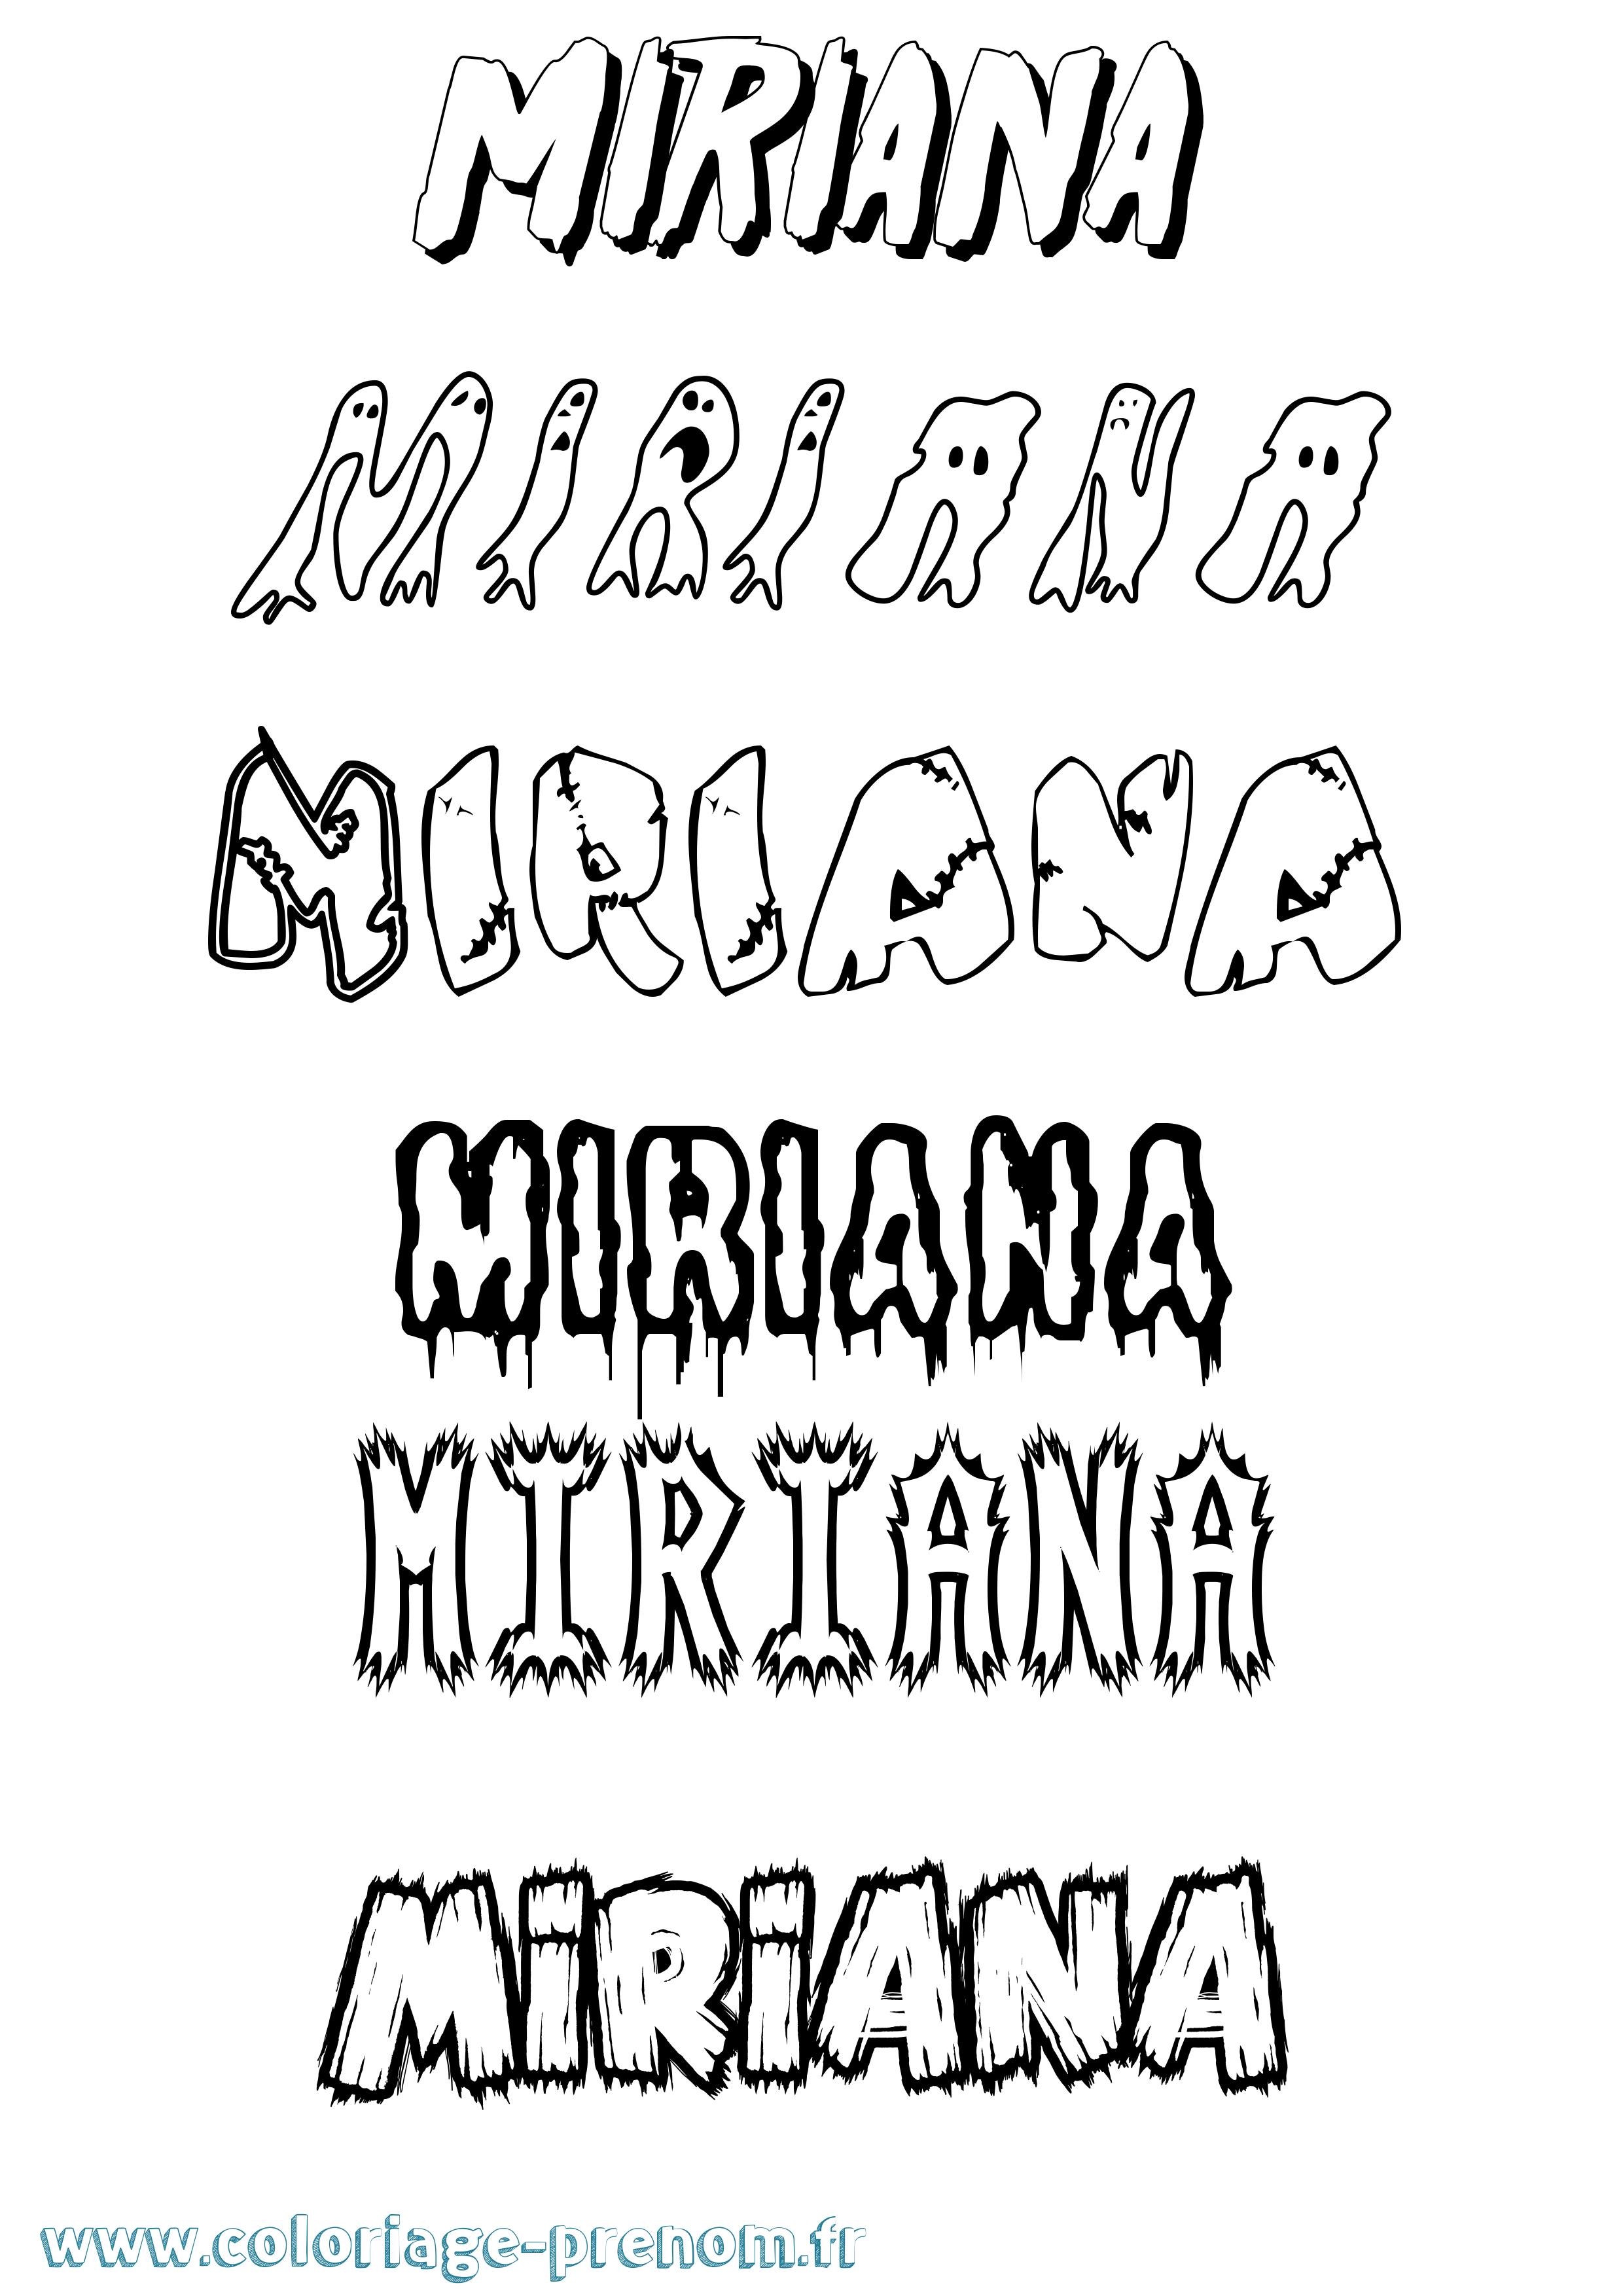 Coloriage prénom Miriana Frisson